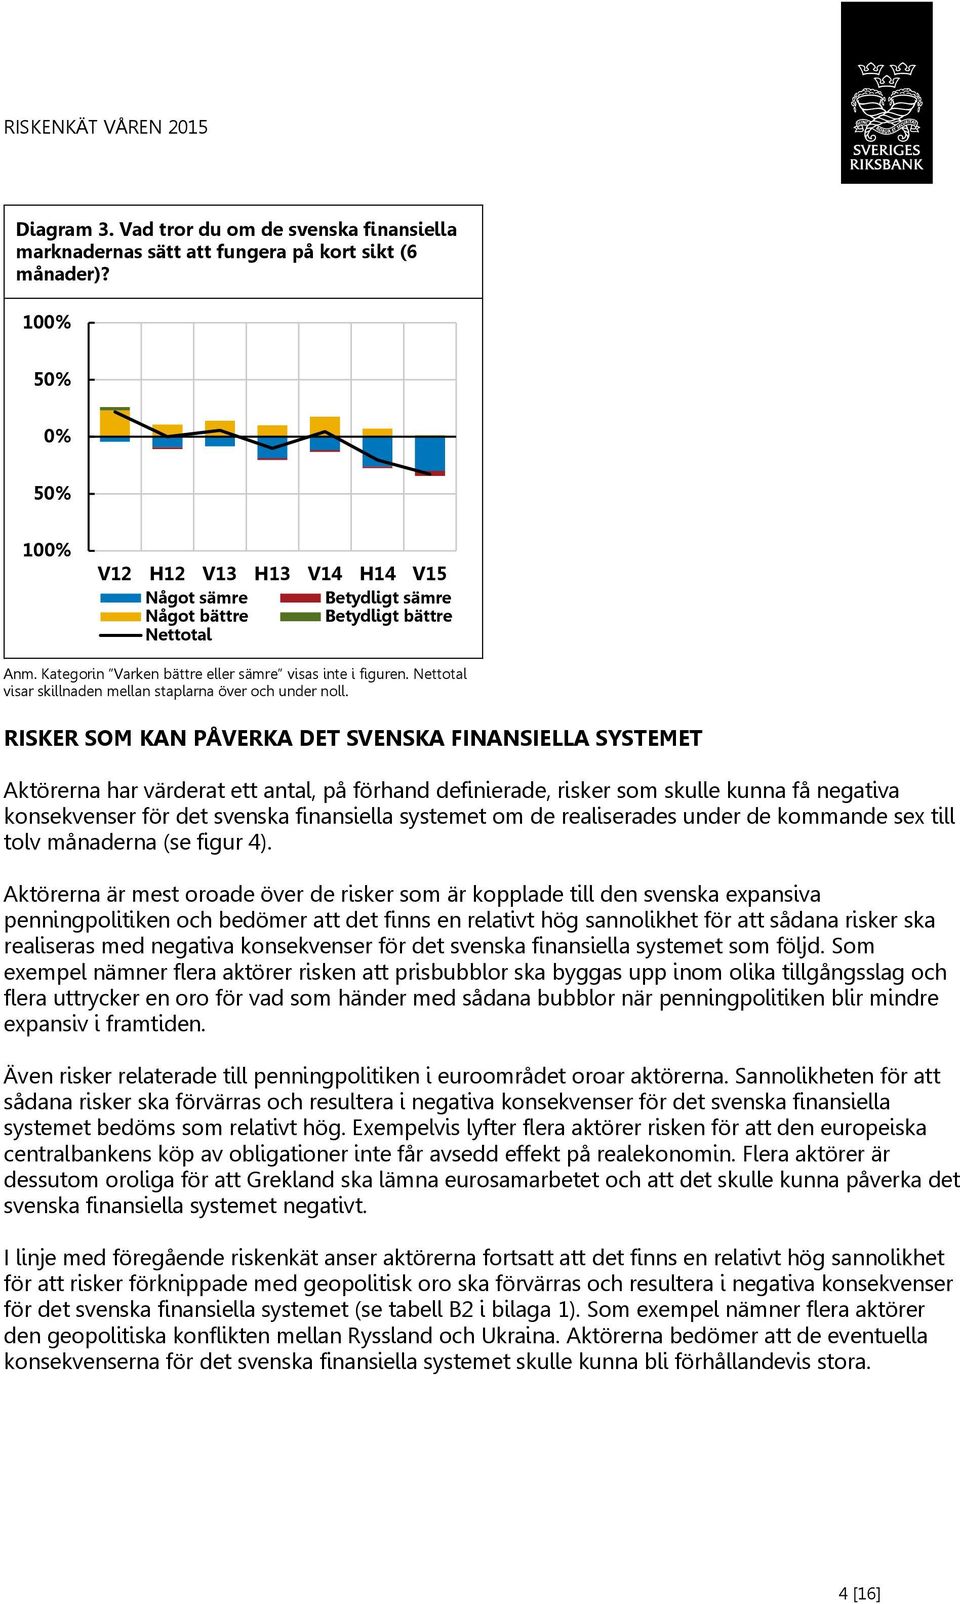 RISKER SOM KAN PÅVERKA DET SVENSKA FINANSIELLA SYSTEMET Aktörerna har värderat ett antal, på förhand definierade, risker som skulle kunna få negativa konsekvenser för det svenska finansiella systemet